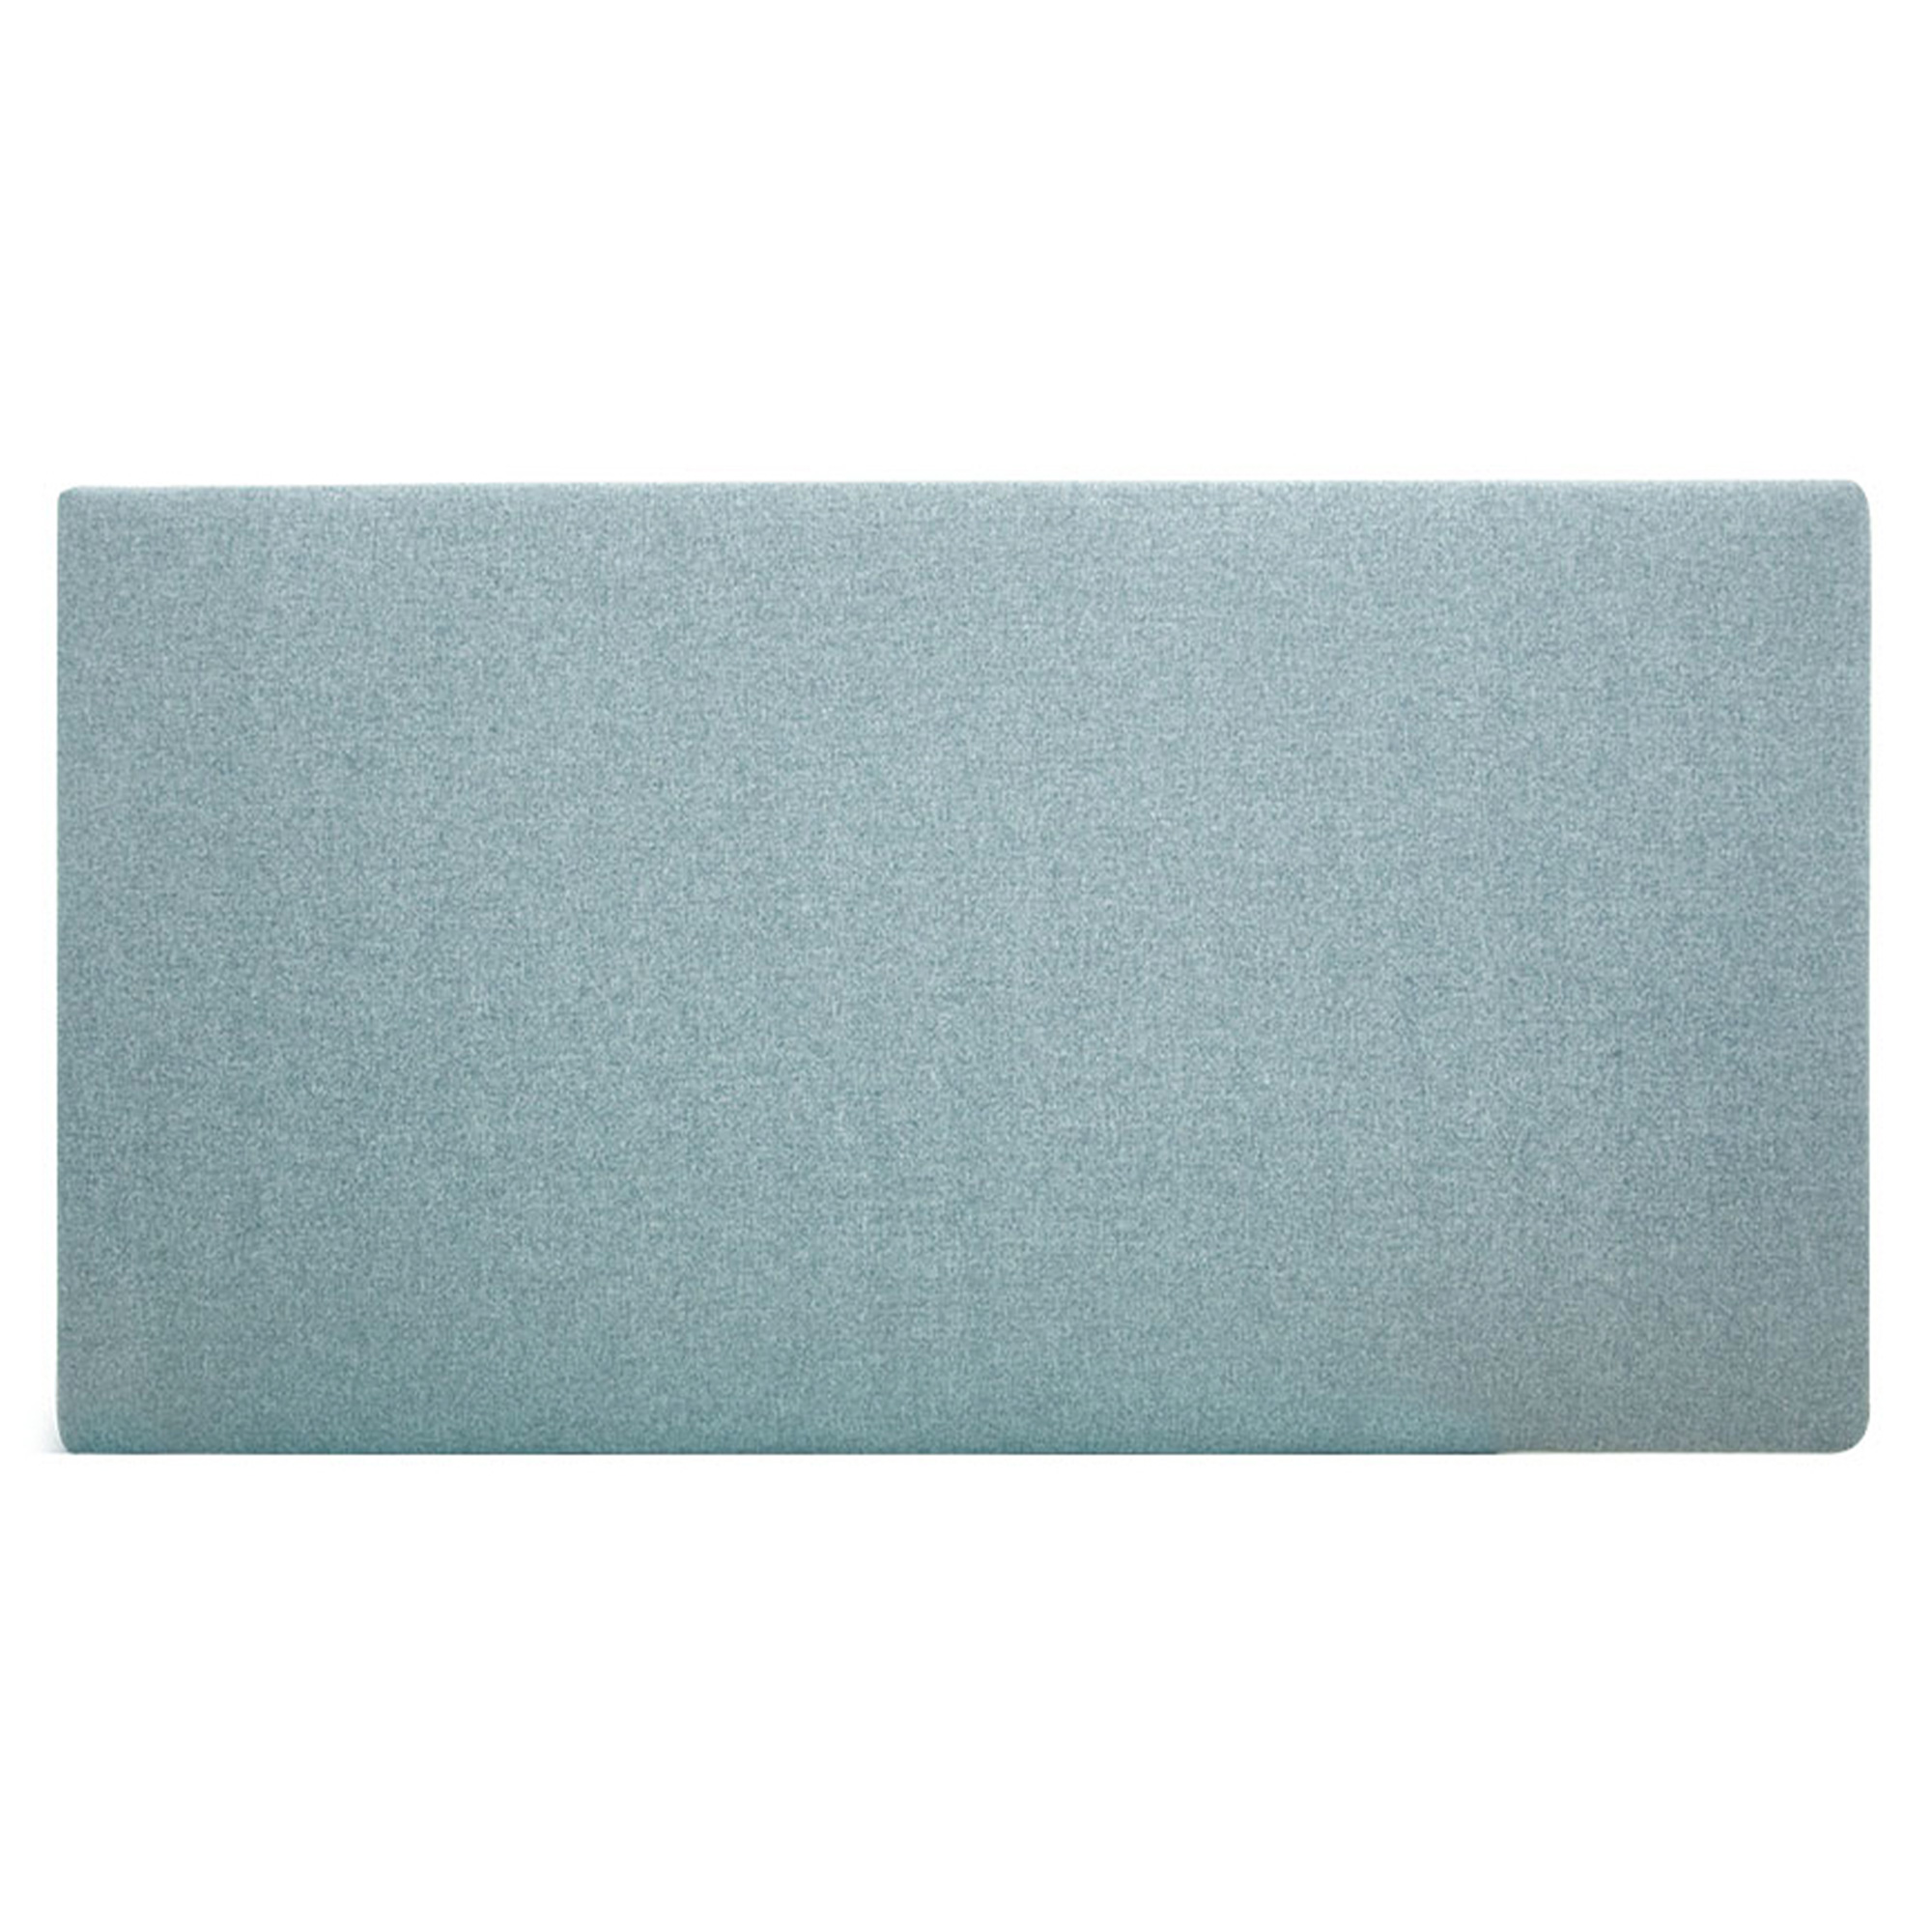 Tête de lit polyester lisse couleur bleu-verte 160x80cm